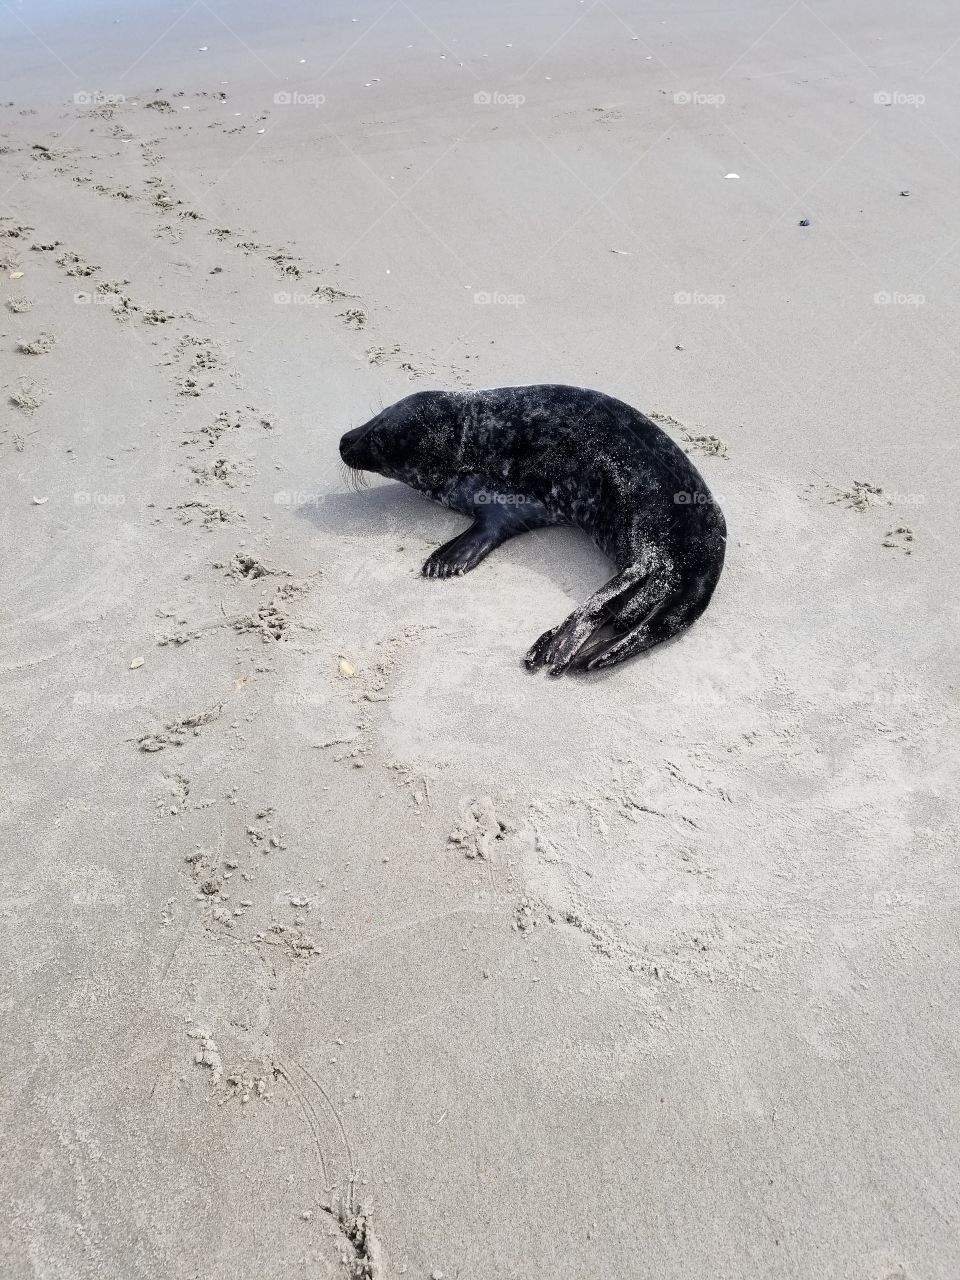 sea lion takes a break